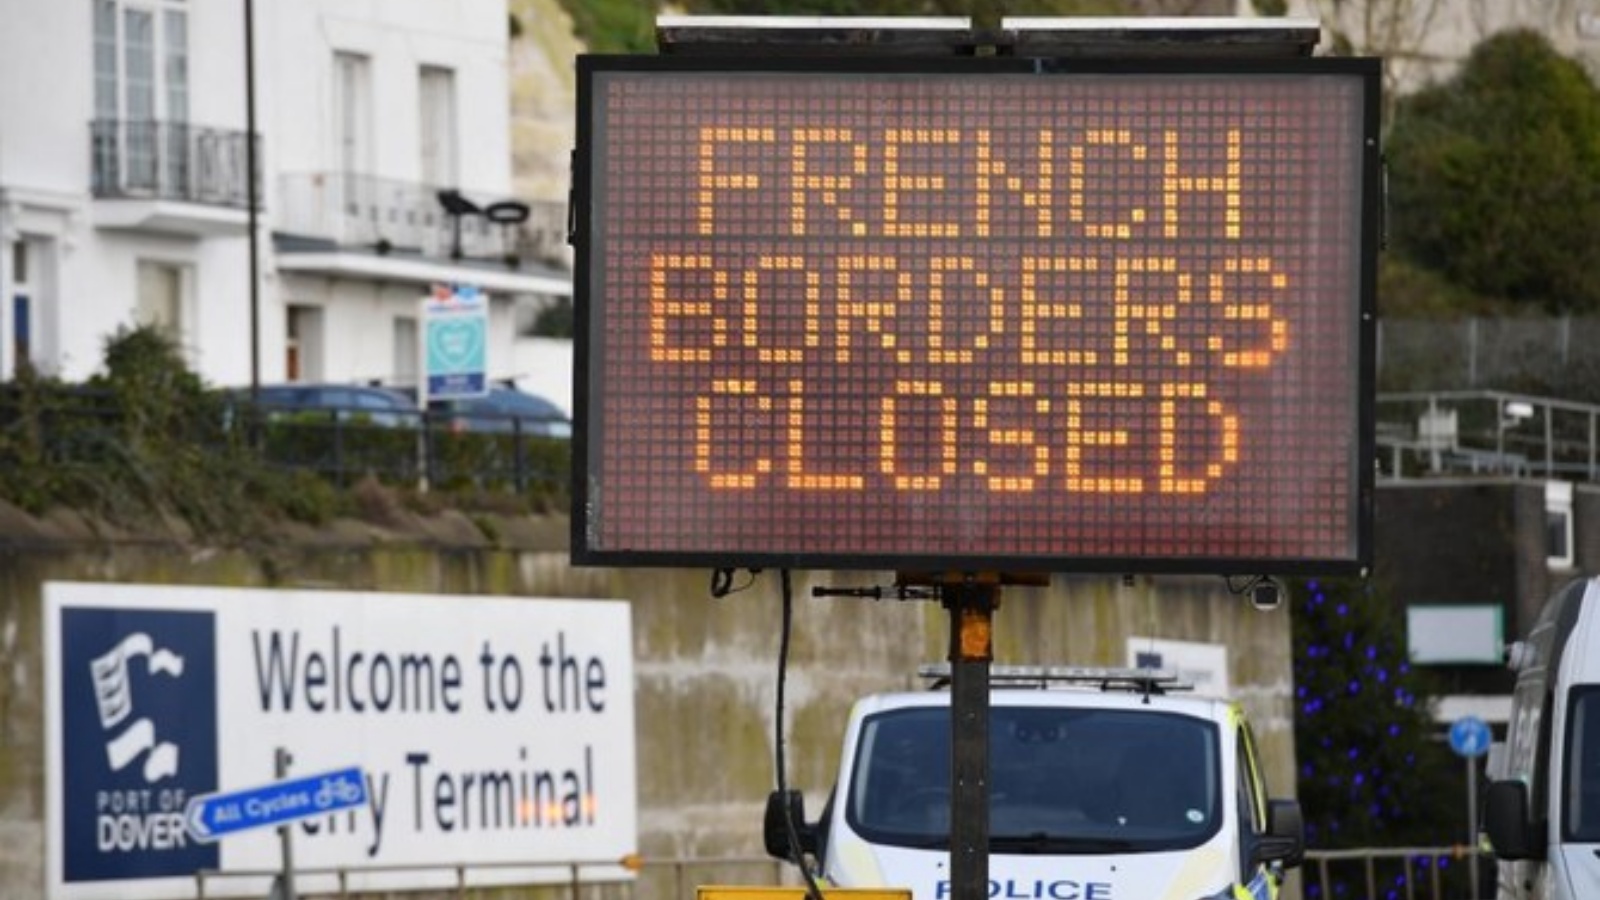 لافتة تُعلم السائقين أن المعبر الحدودي الفرنسي مغلق عند المدخل المطوق لمحطة العبّارات في ميناء دوفر في كنت، جنوب شرق إنكلترا.